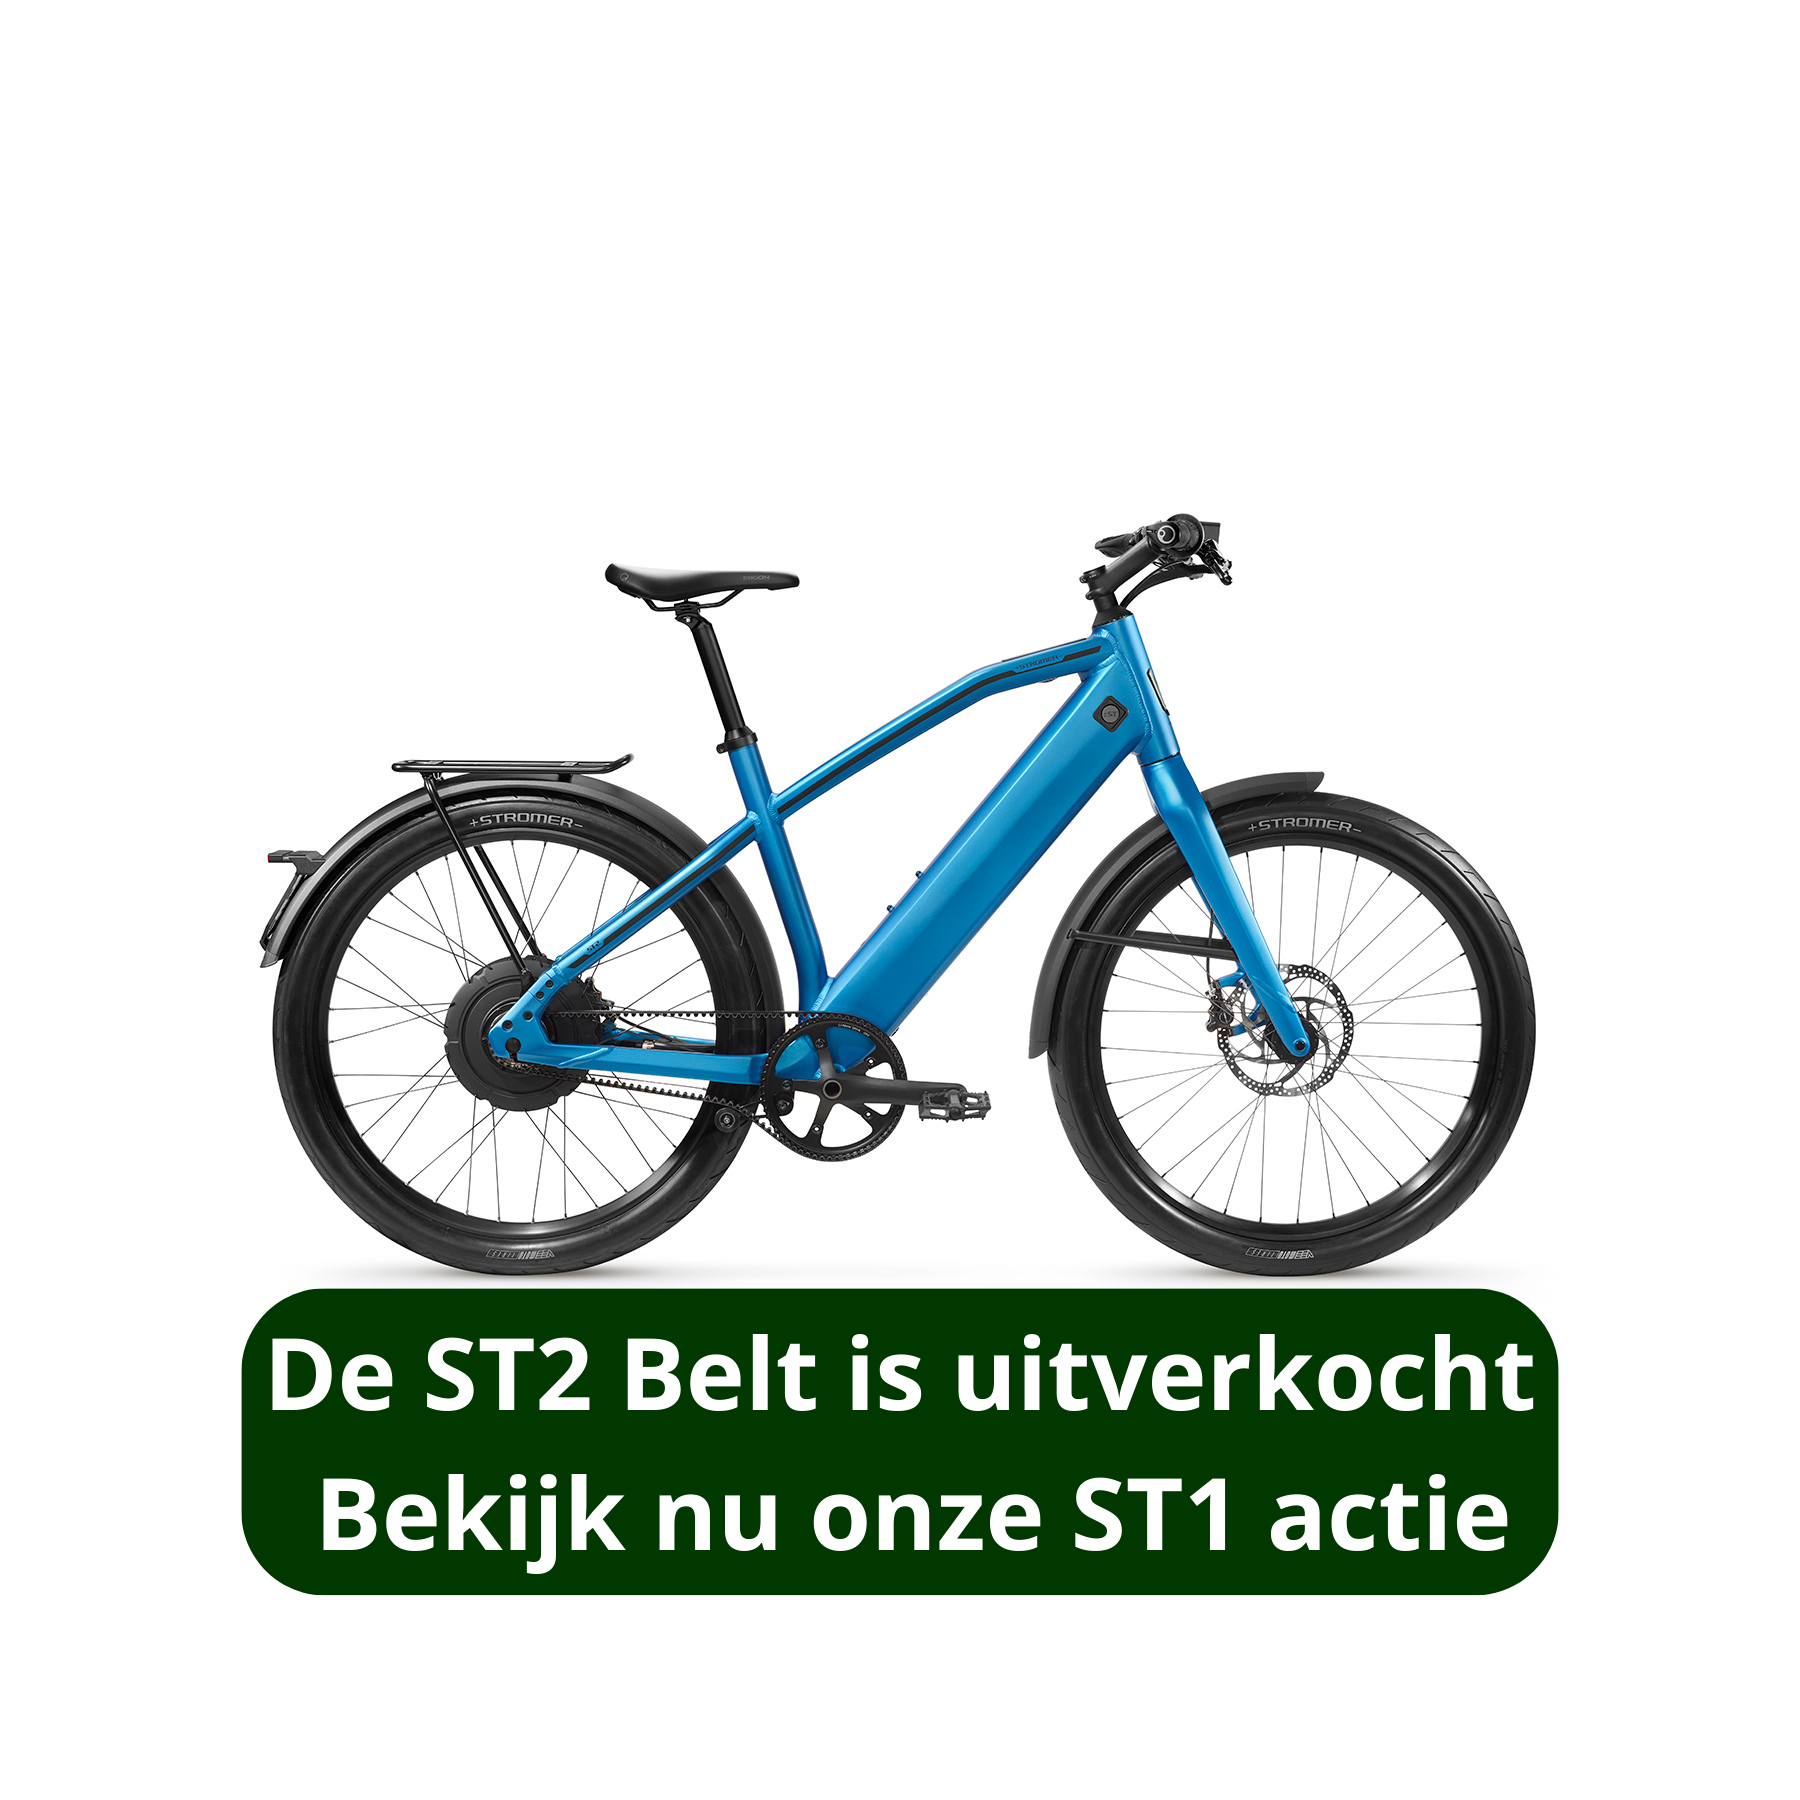 Deze fiets is uitverkocht maar bekijk nu onze ST1 actie - Vietz - de specialist in E-bikes en Speed Pedelecs